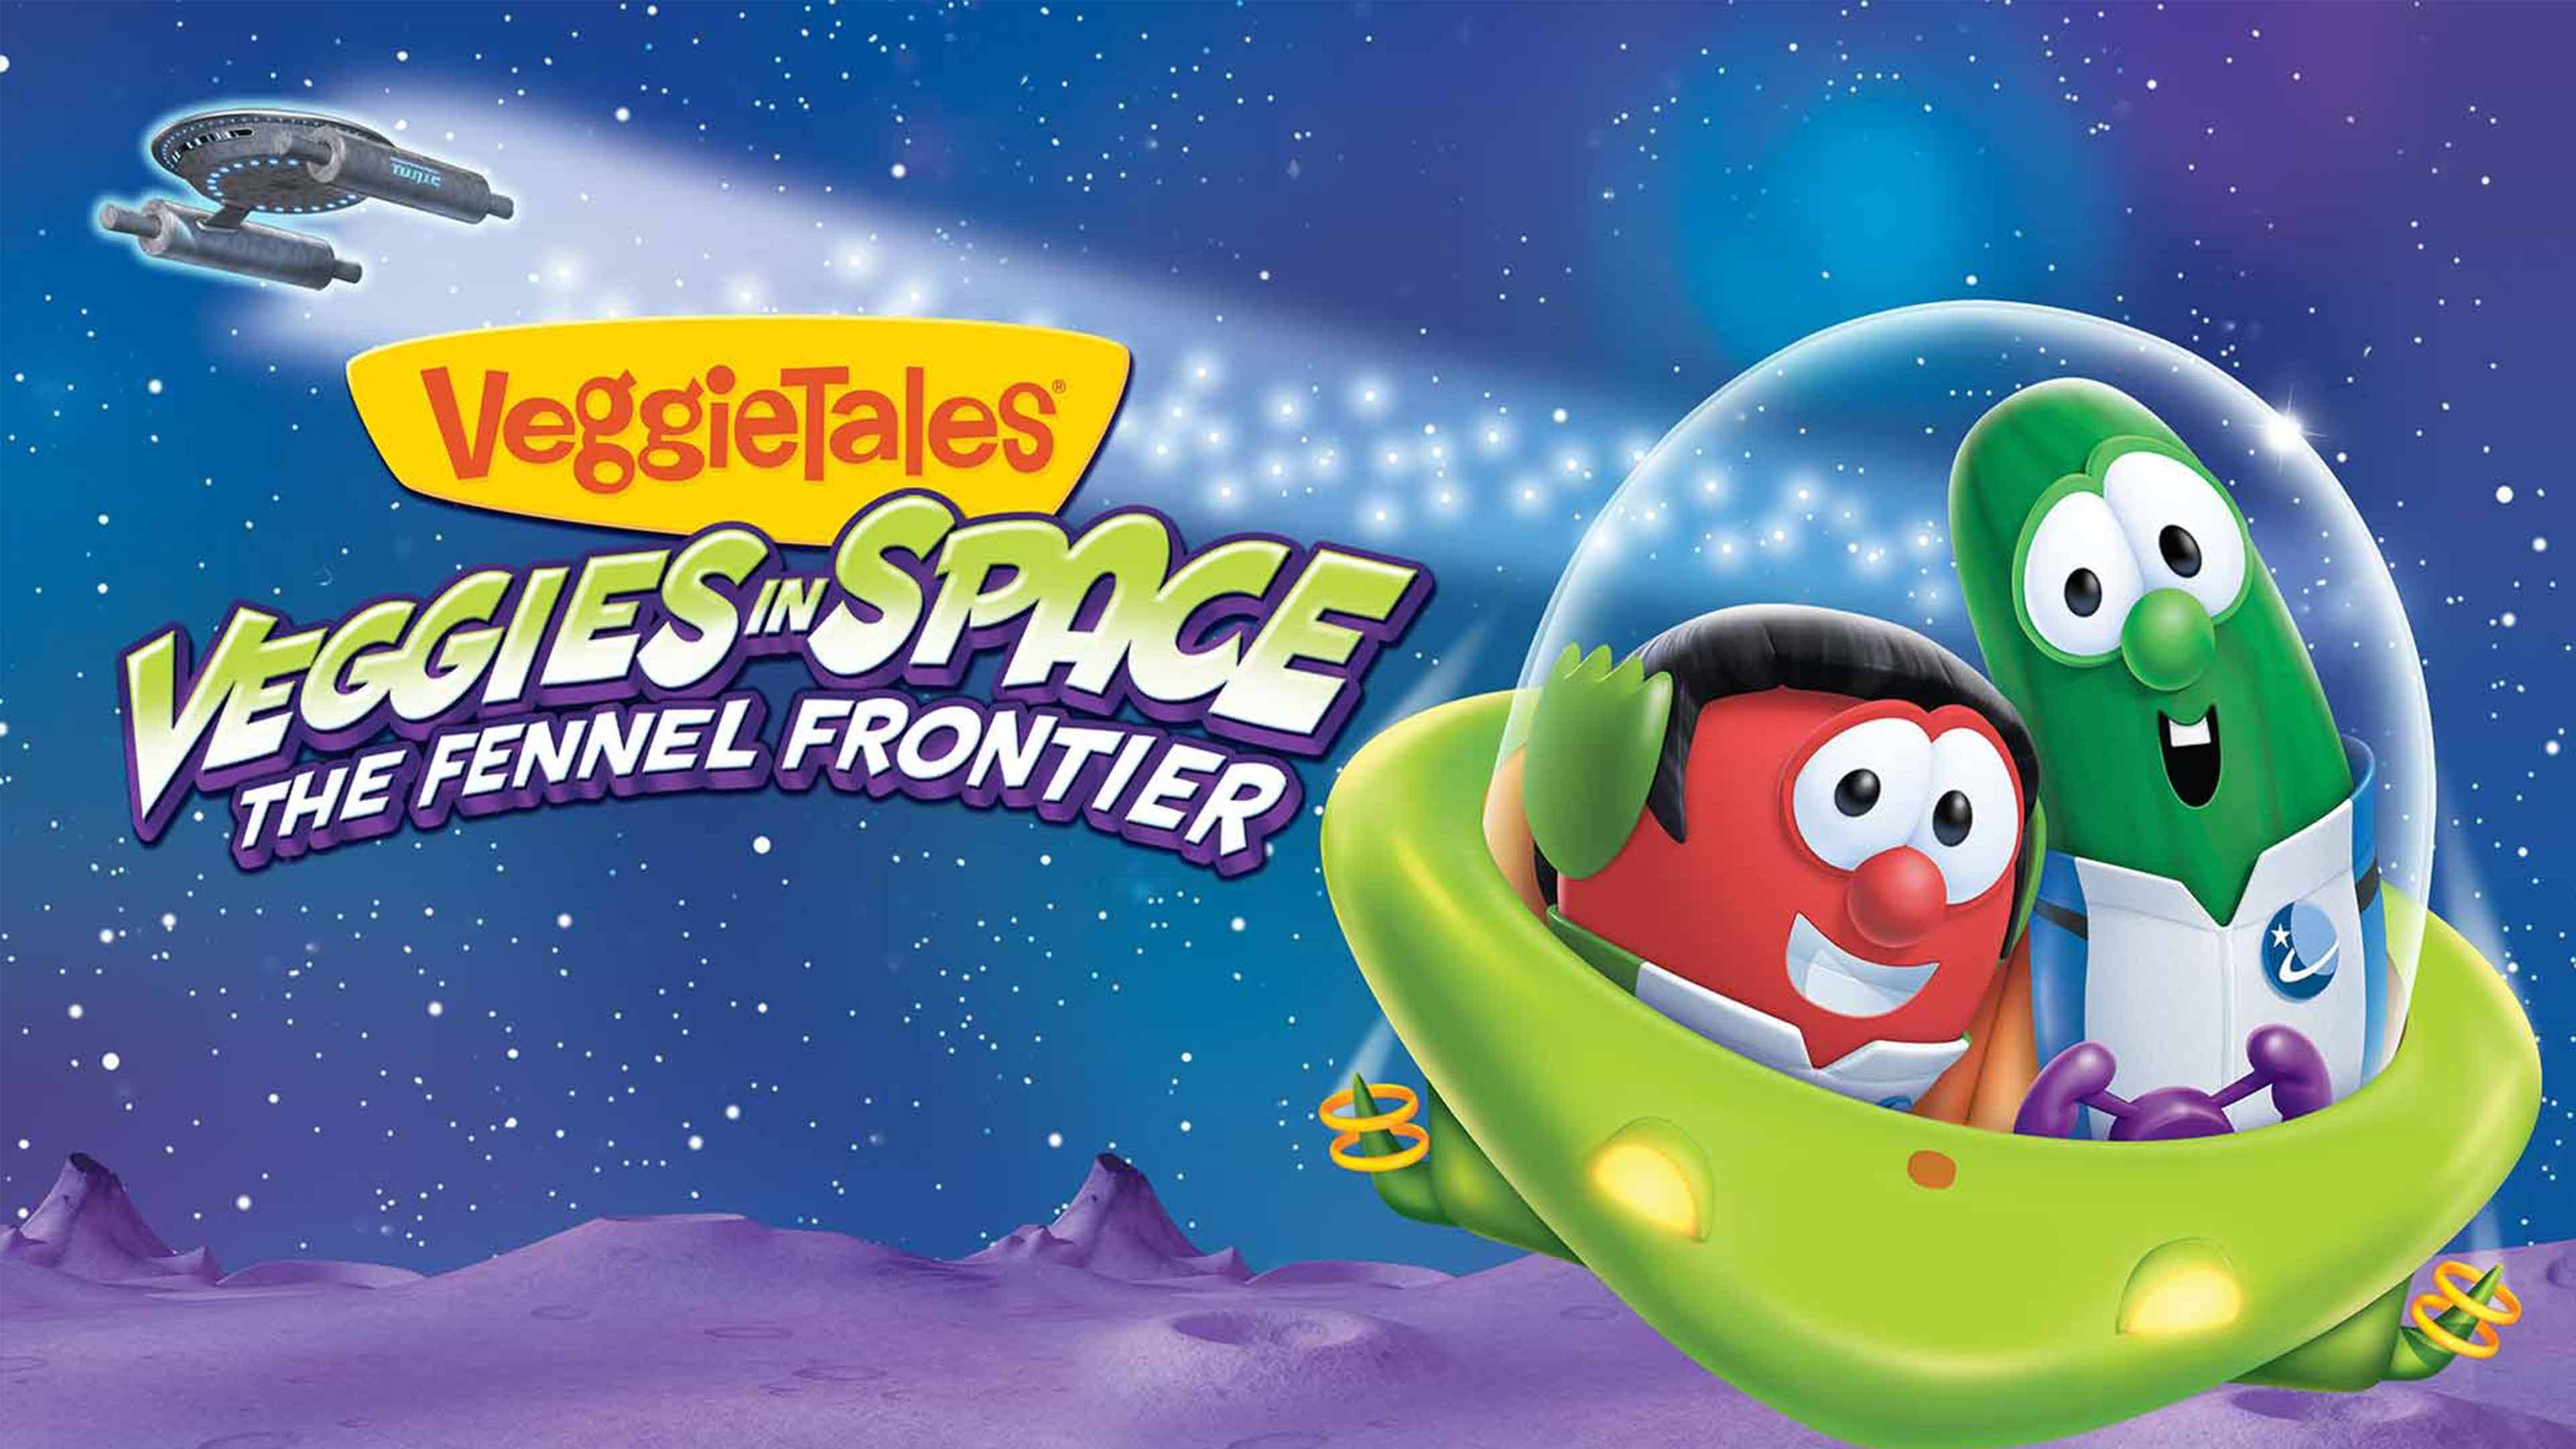 VeggieTales: Veggies In Space - The Fennel Frontier (2014)